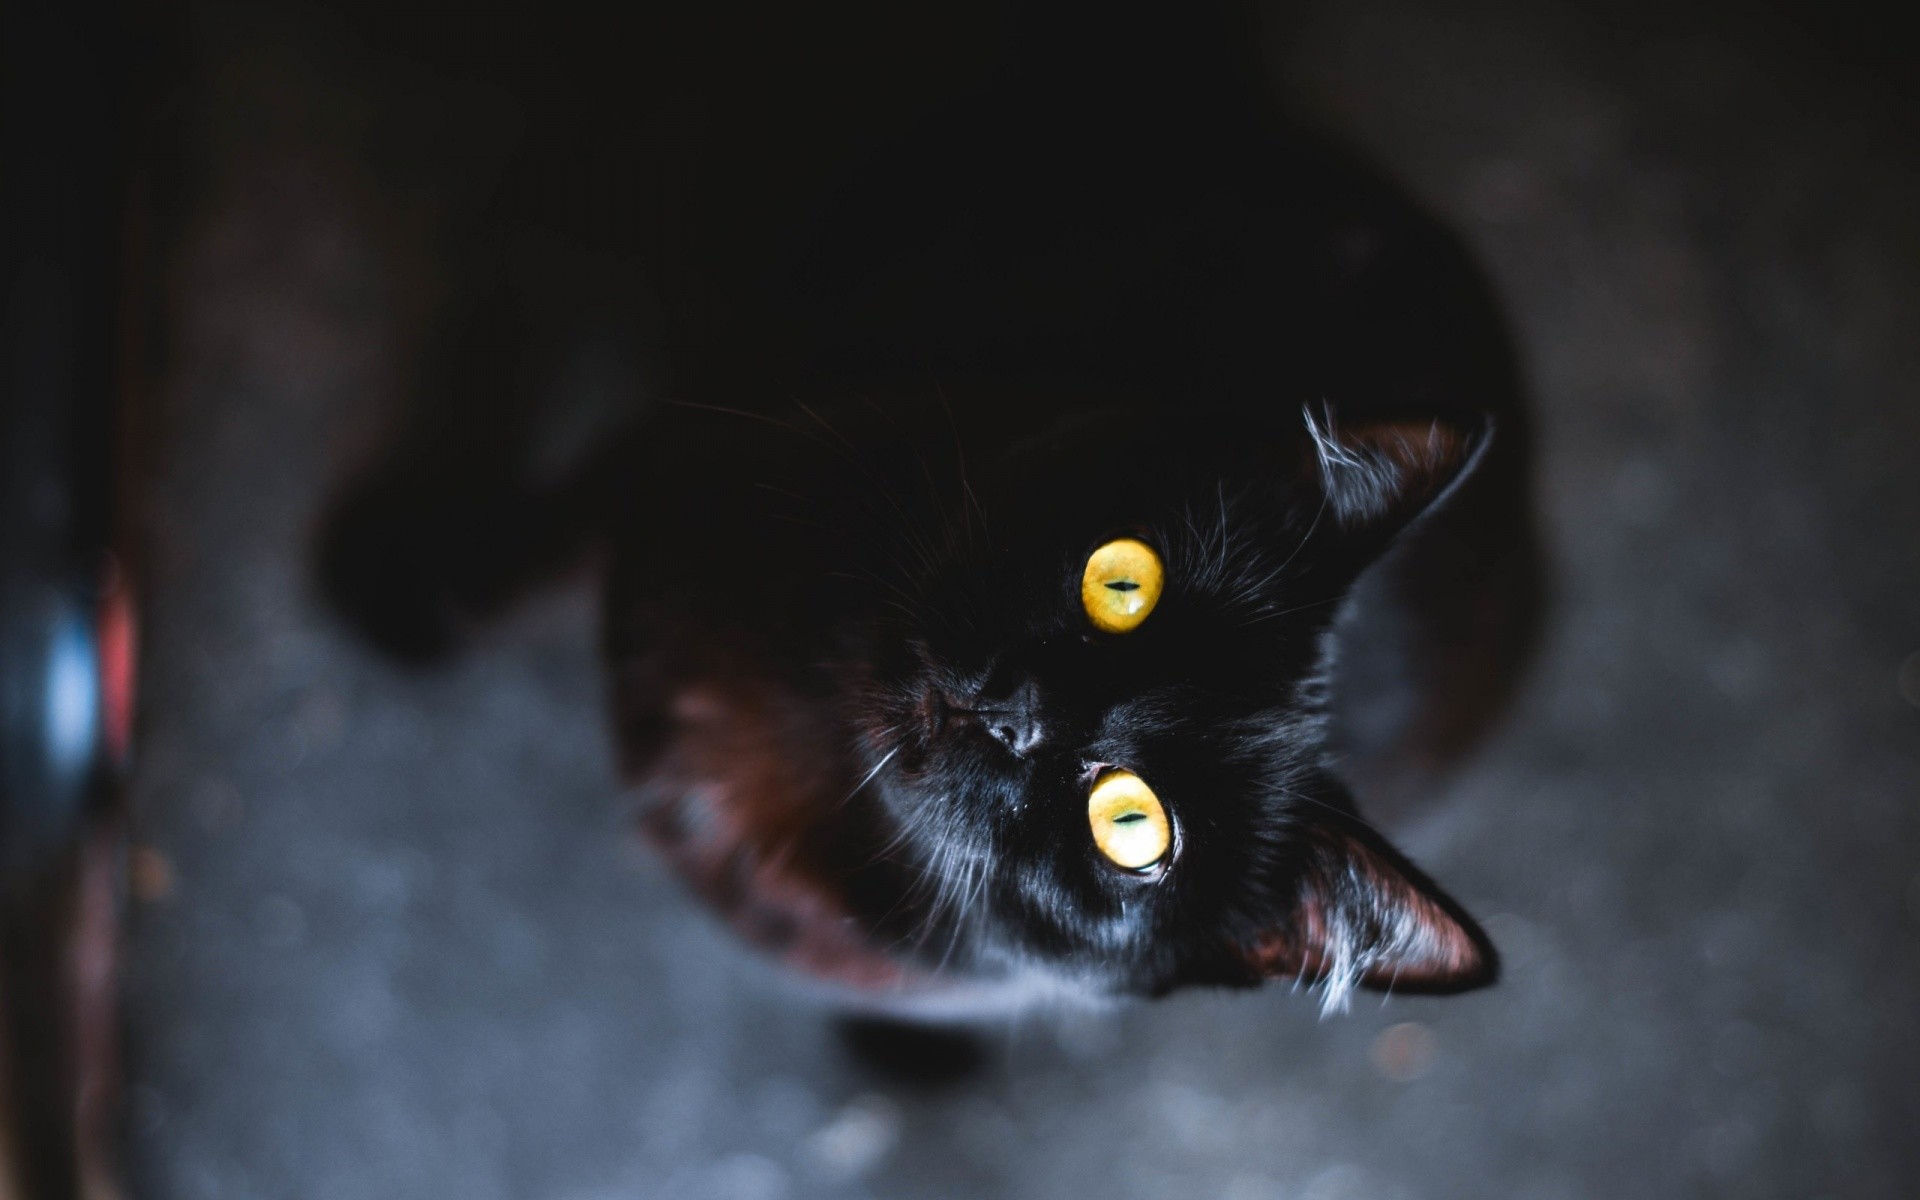 Spotted Black Cat - Mac Black Cat - HD Wallpaper 